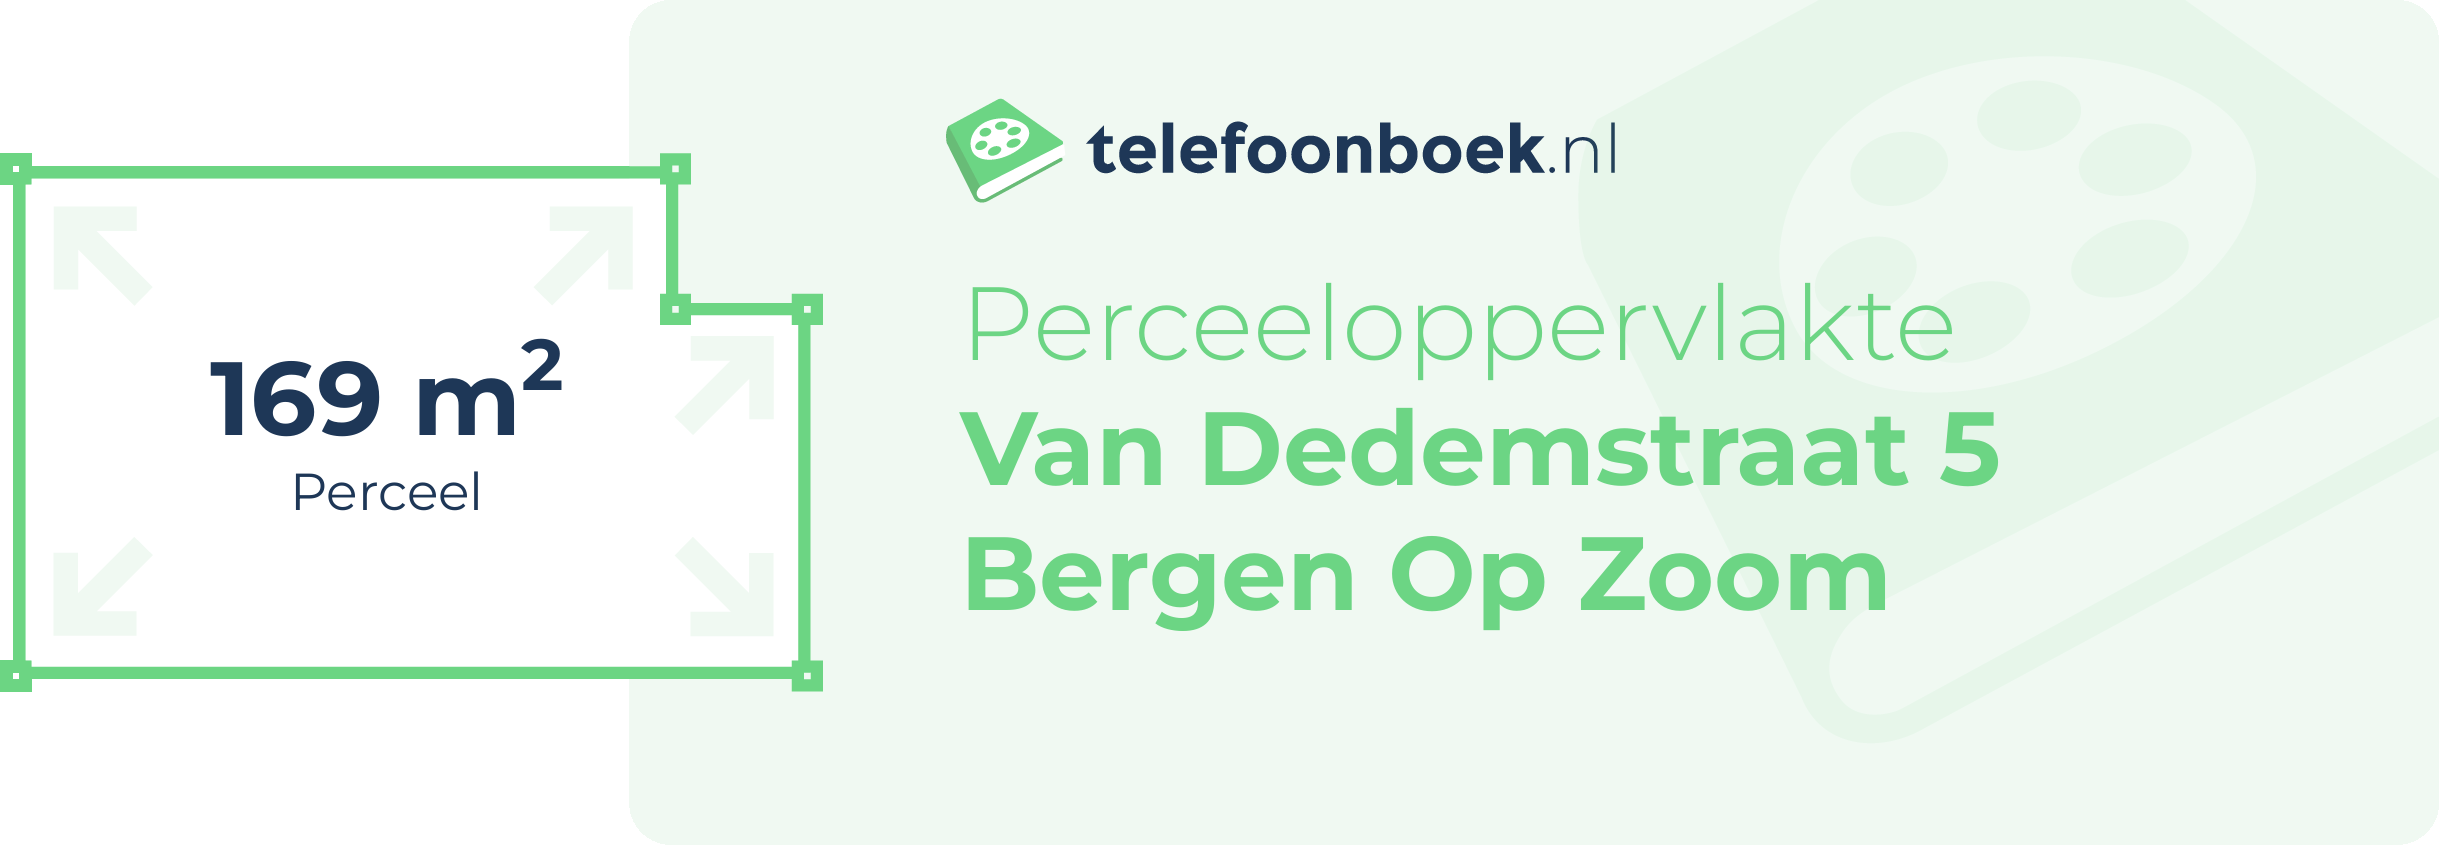 Perceeloppervlakte Van Dedemstraat 5 Bergen Op Zoom